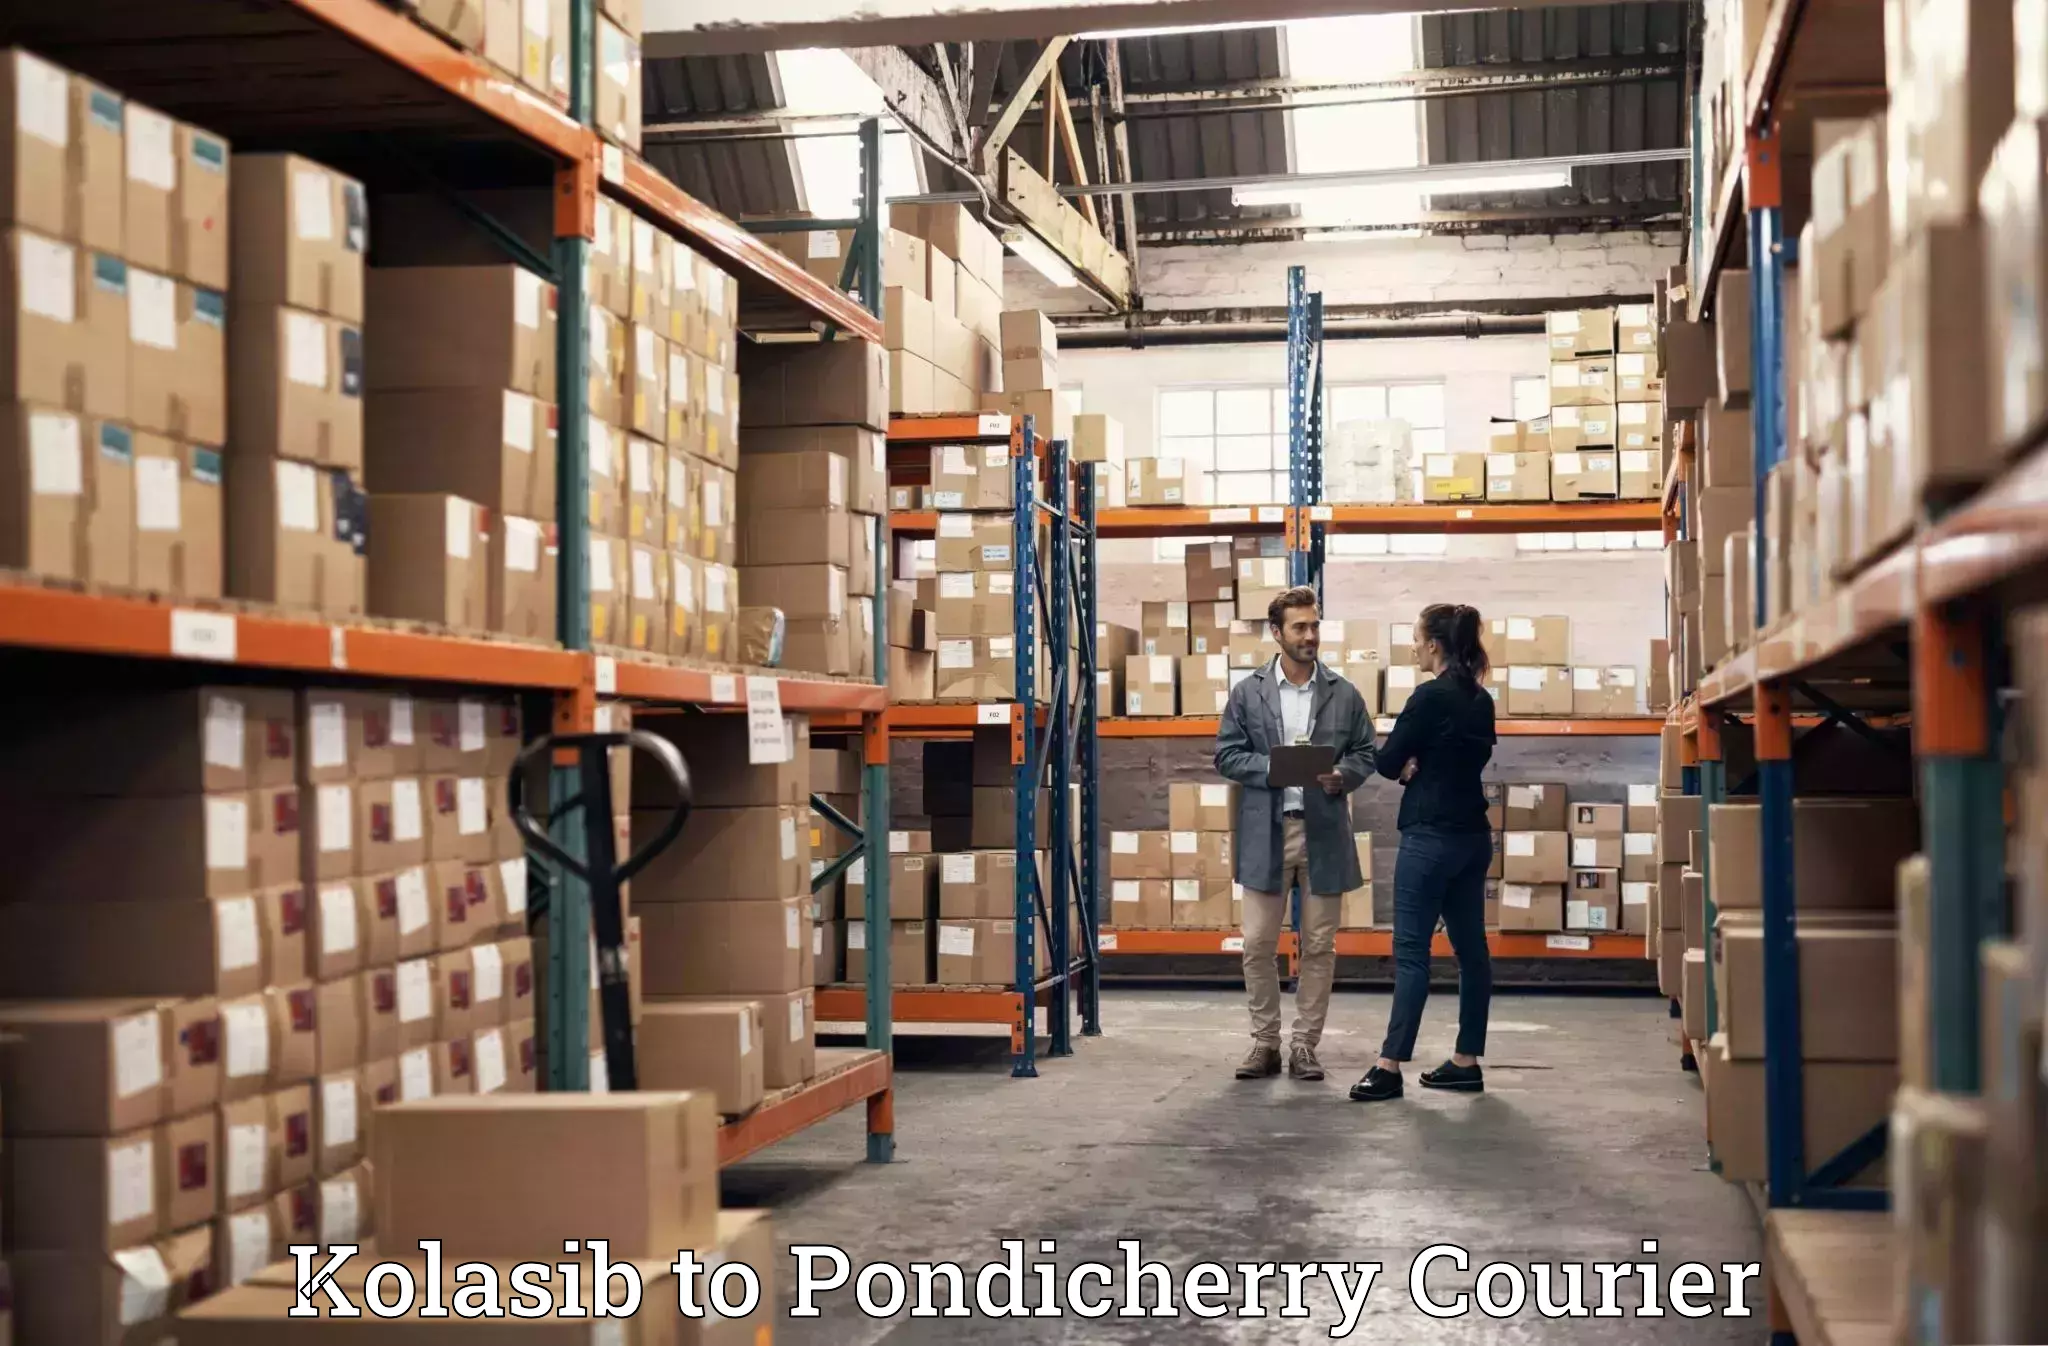 Efficient moving company Kolasib to Pondicherry